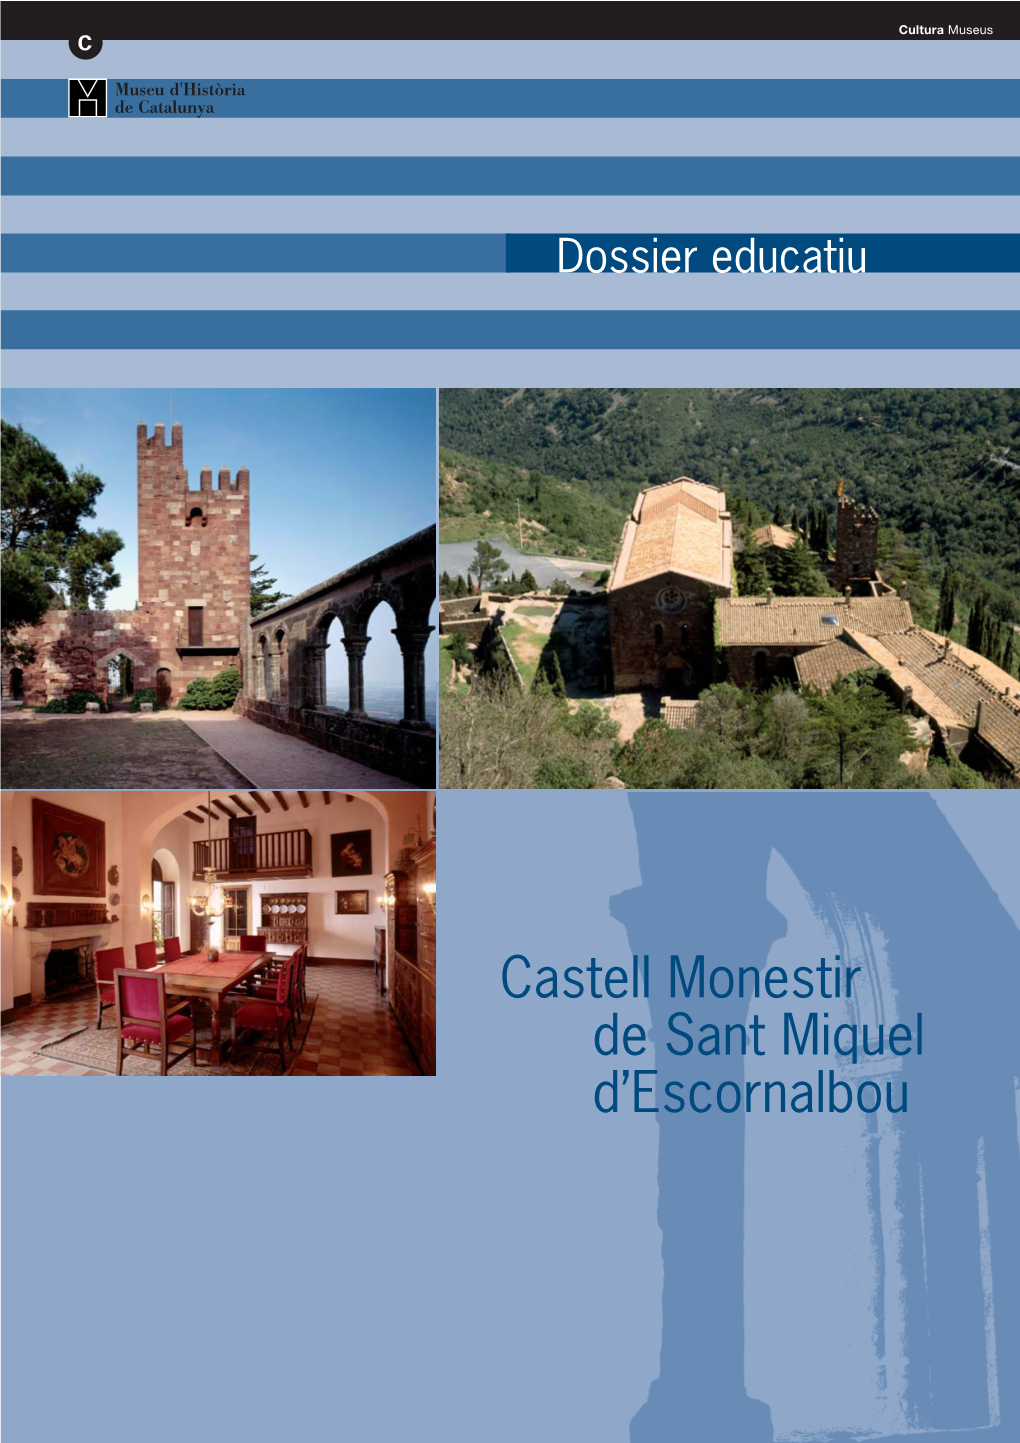 Castell Monestir De Sant Miquel D'escornalbou